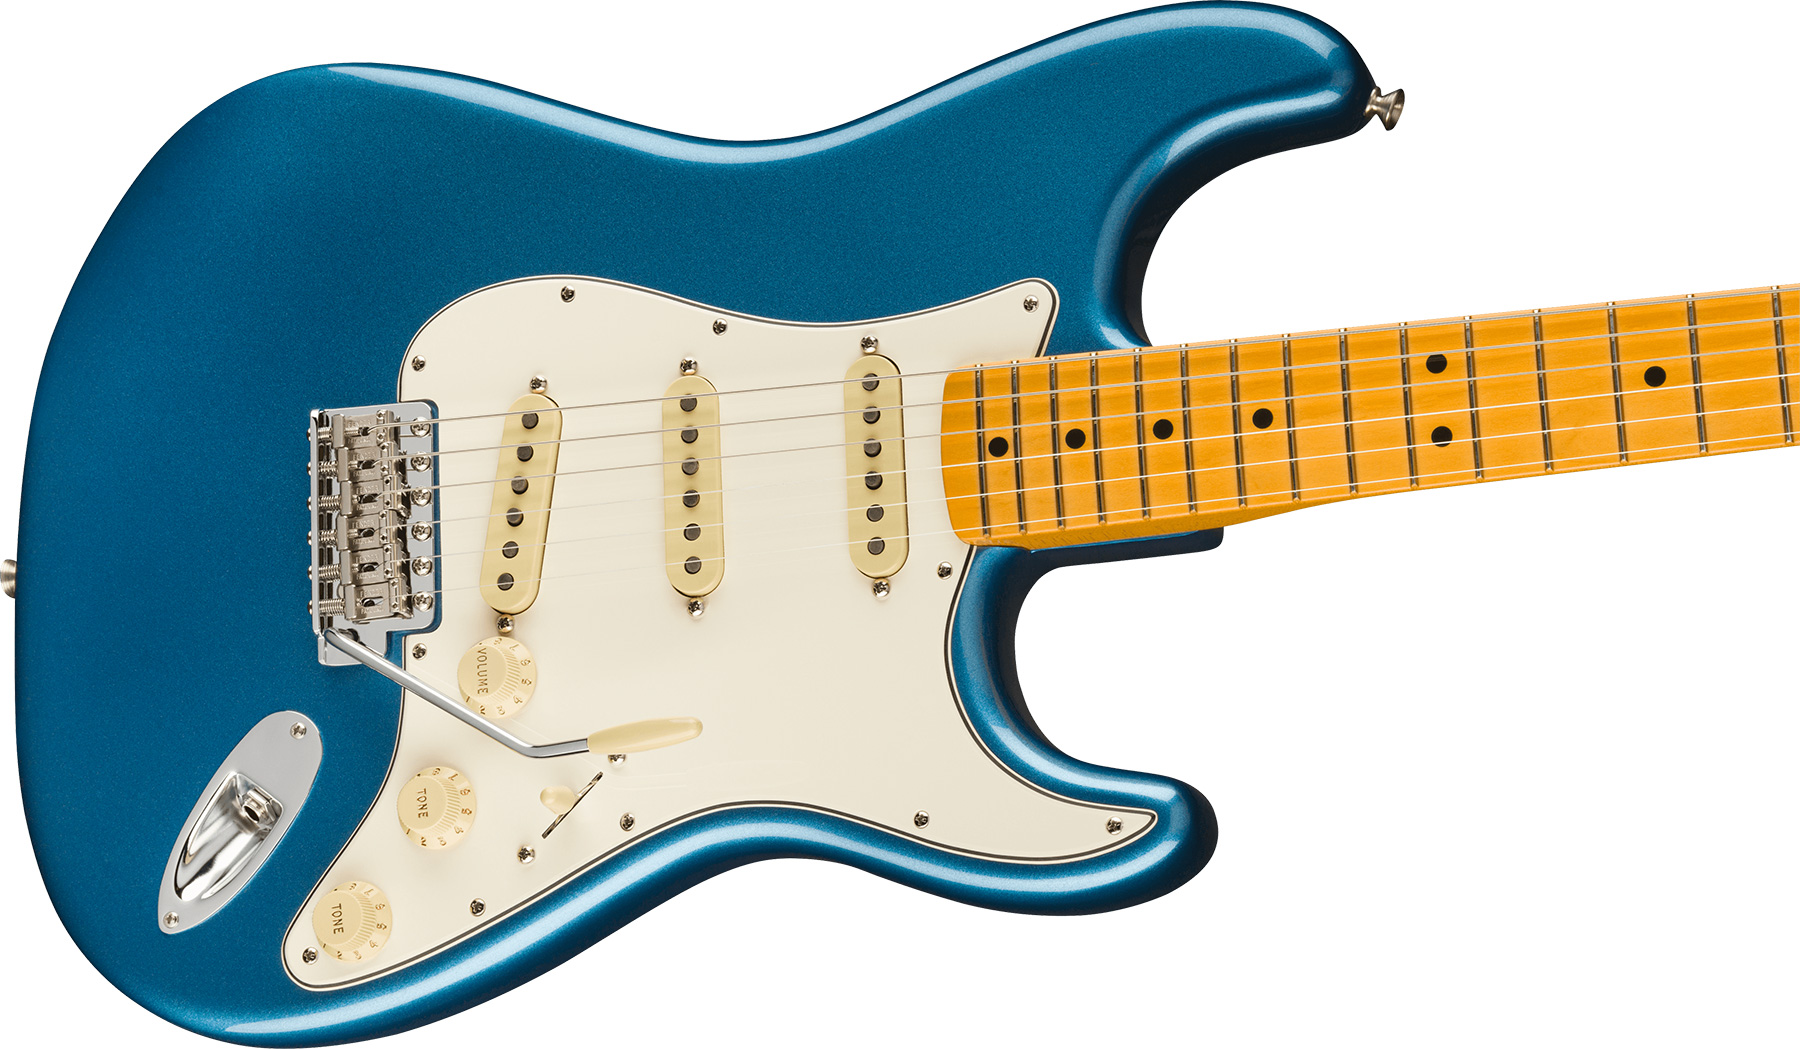 Fender Strat 1973 American Vintage Ii Usa 3s Trem Mn - Lake Placid Blue - E-Gitarre in Str-Form - Variation 2